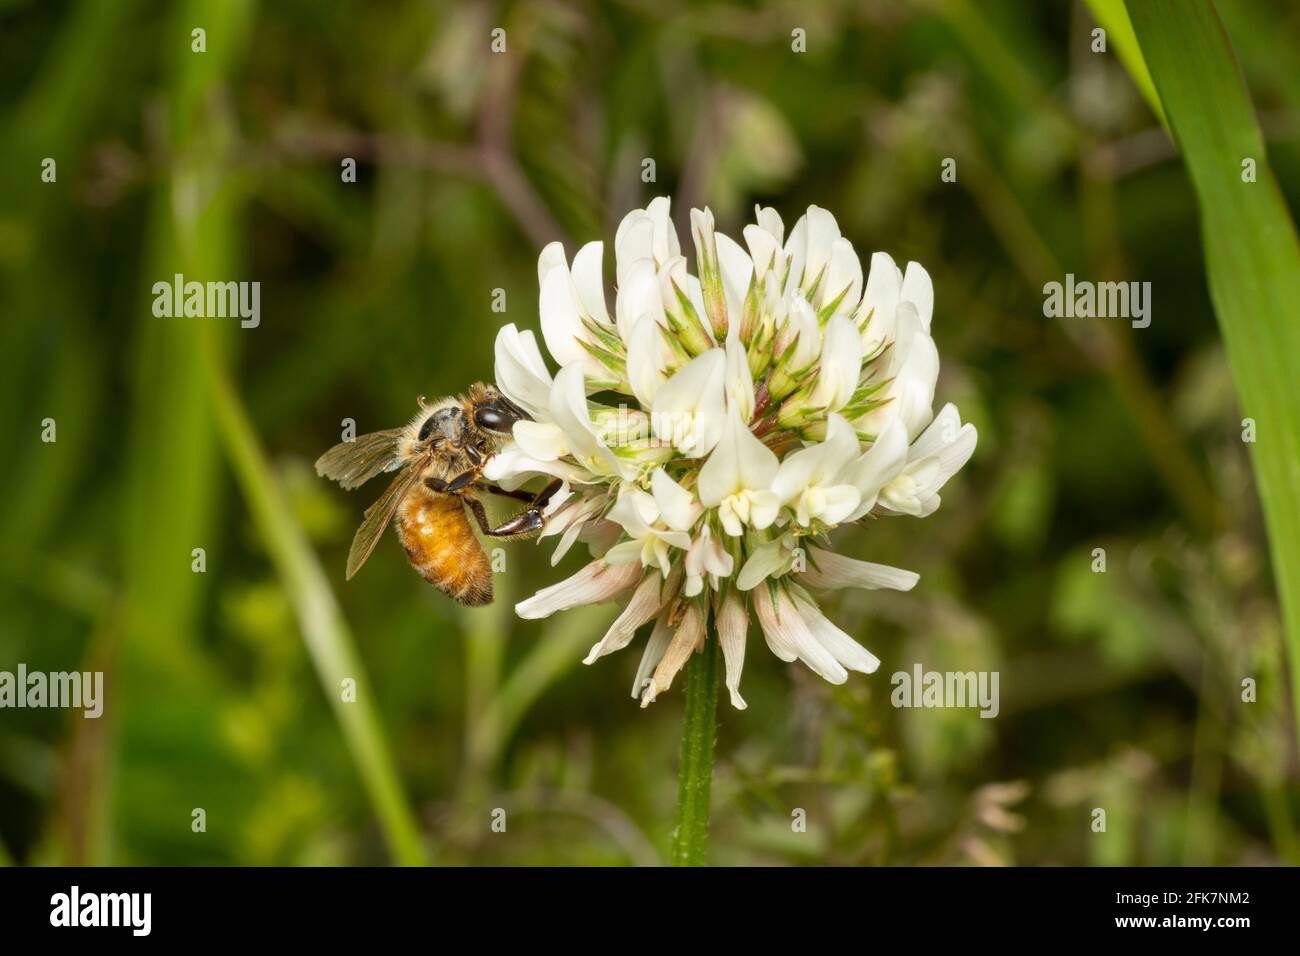 Ape del miele occidentale (Apis mellifera) succhiare trifoglio bianco (repens di trifolium), Città di Isehara, Prefettura di Kanagawa, Giappone. Polline ape è visto sulla gamba. Foto Stock